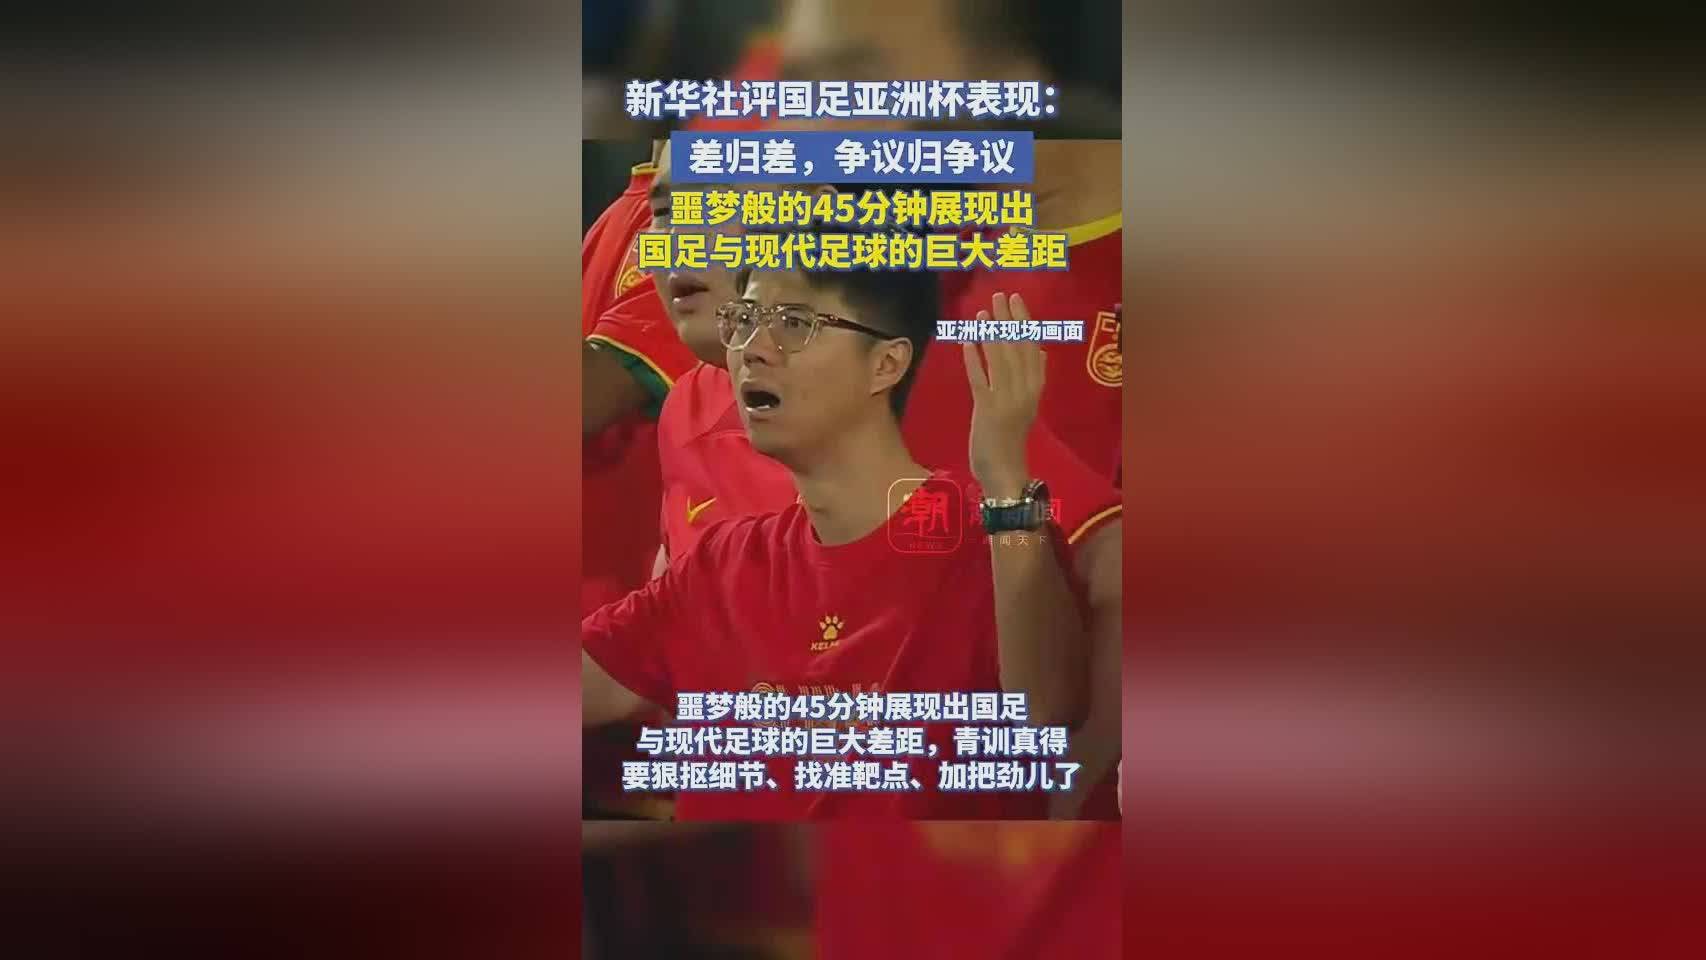 中国足球-中国青年网发文称中国足球不进则退中国足球，说明中国足球还有退步空间